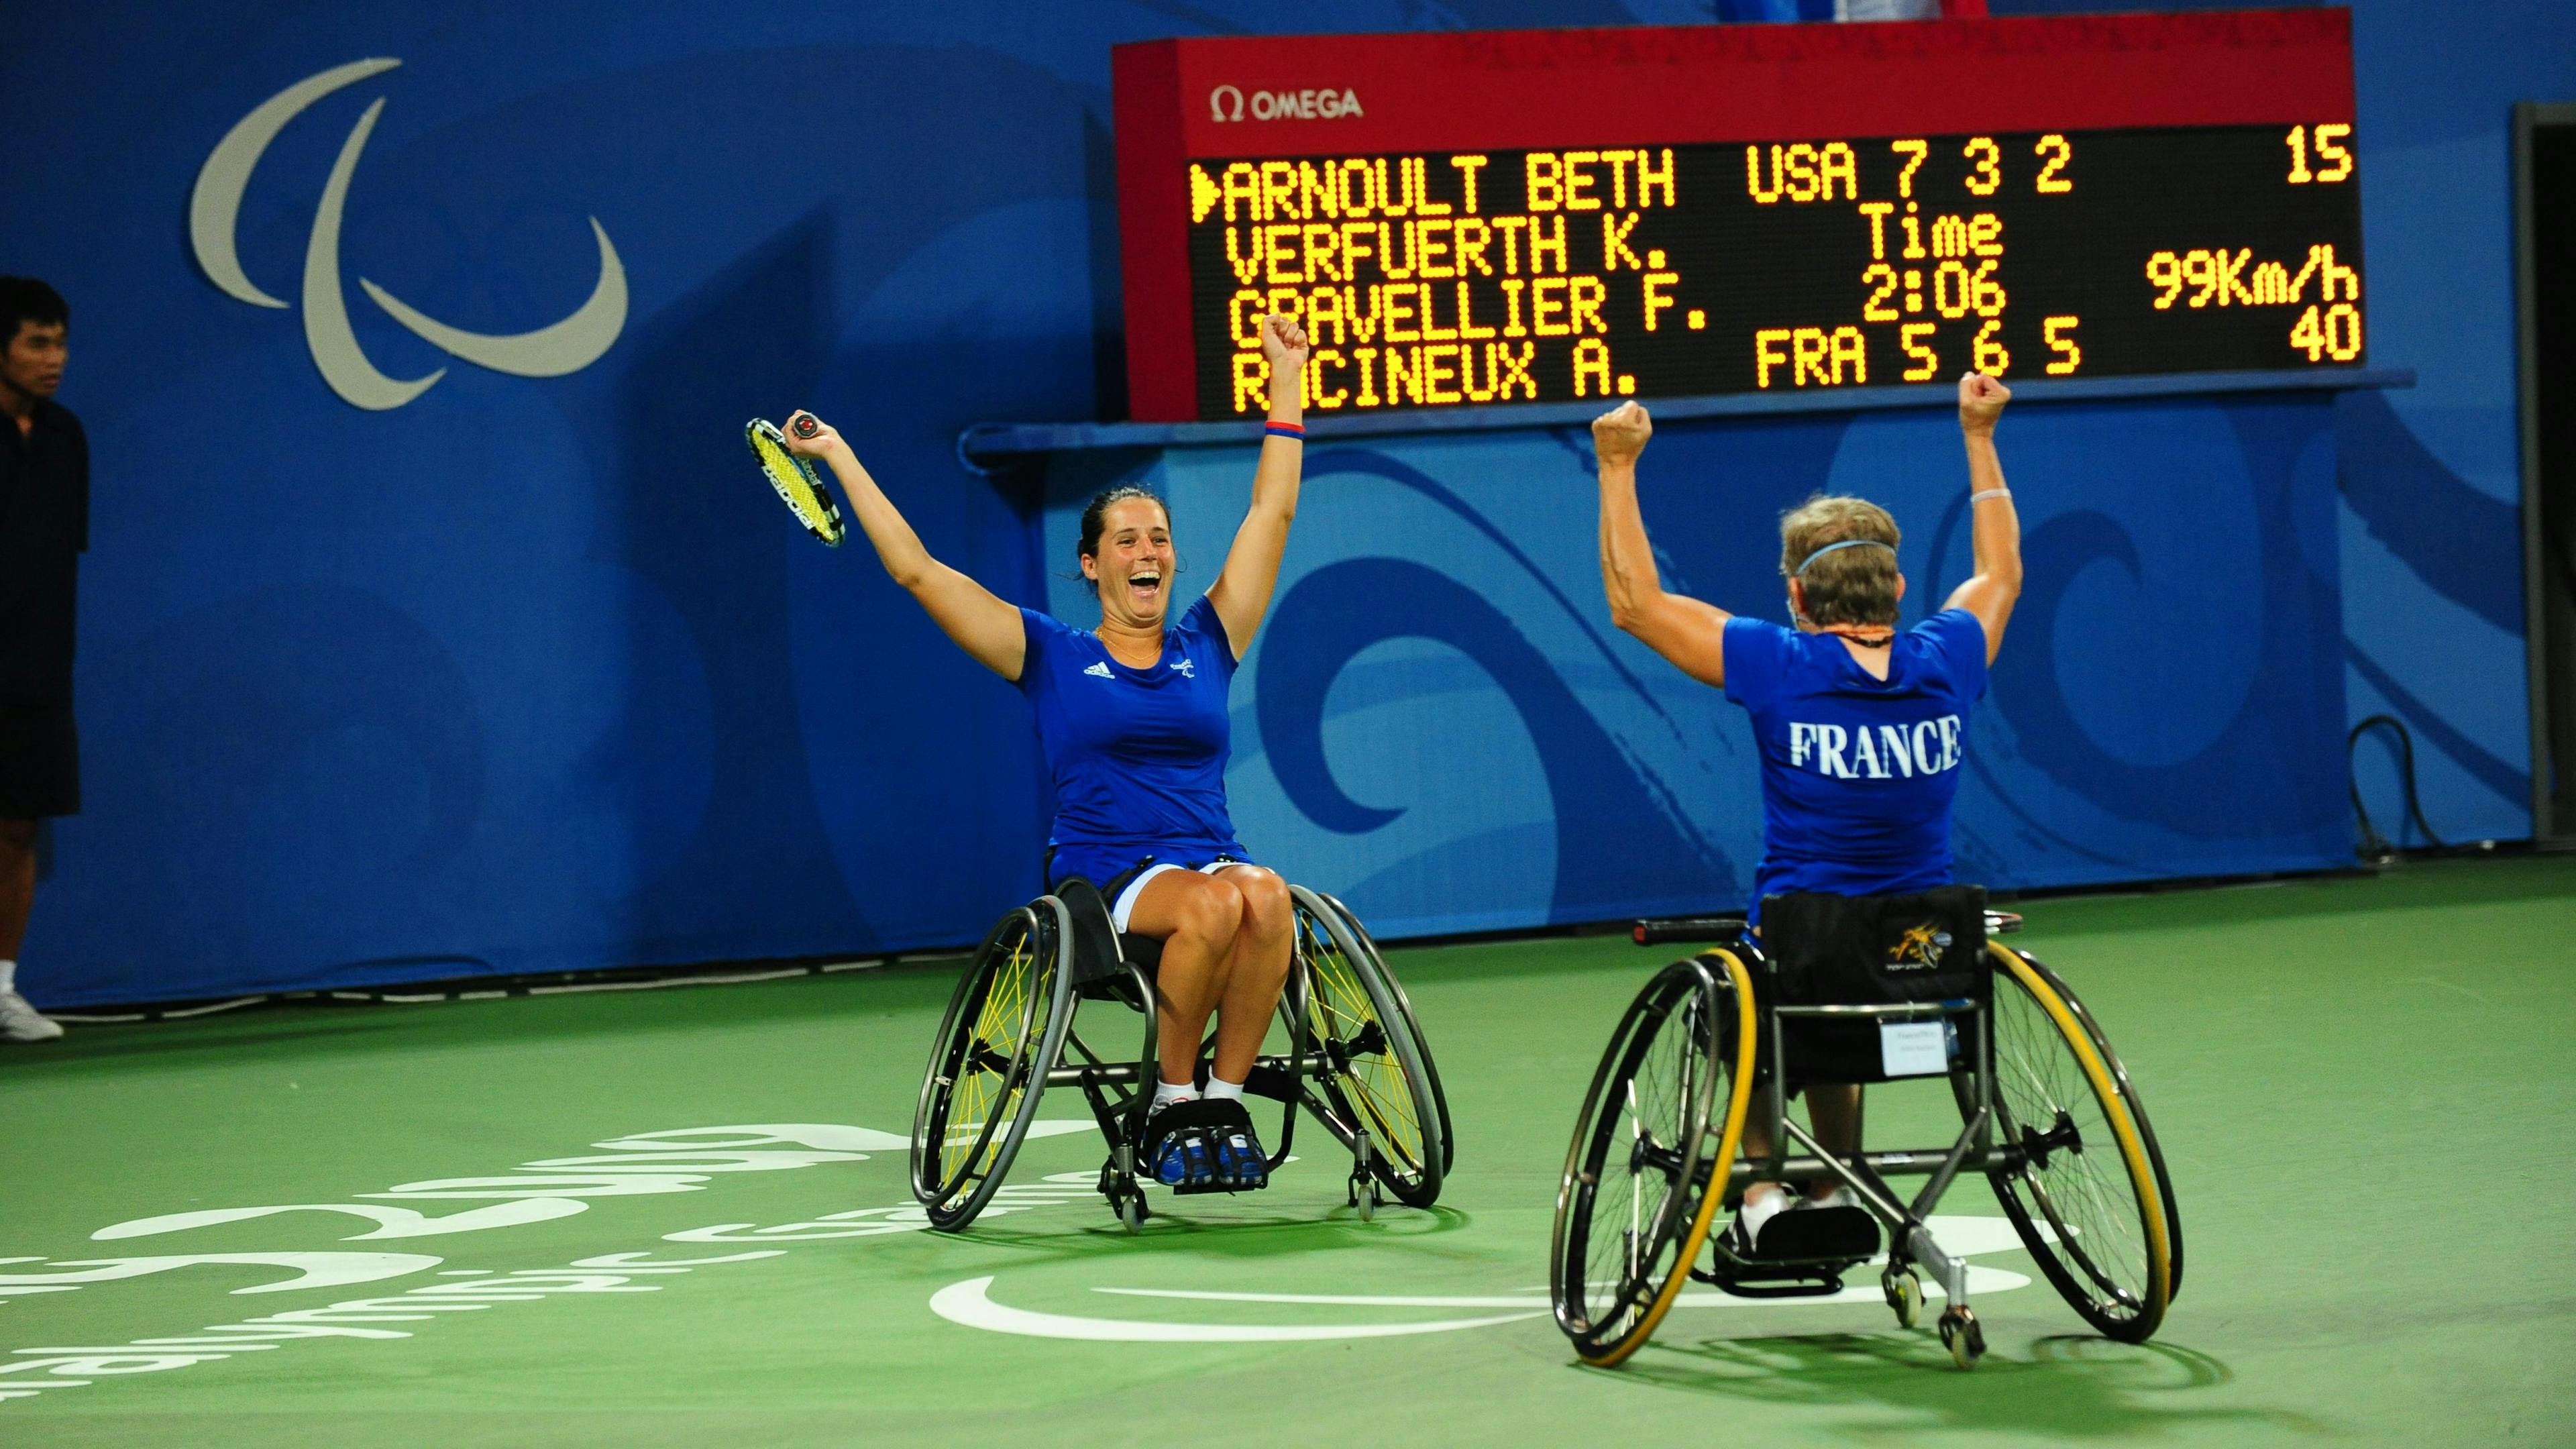 Florence Gravelier et Arlette racineux médaillées à Pékin !